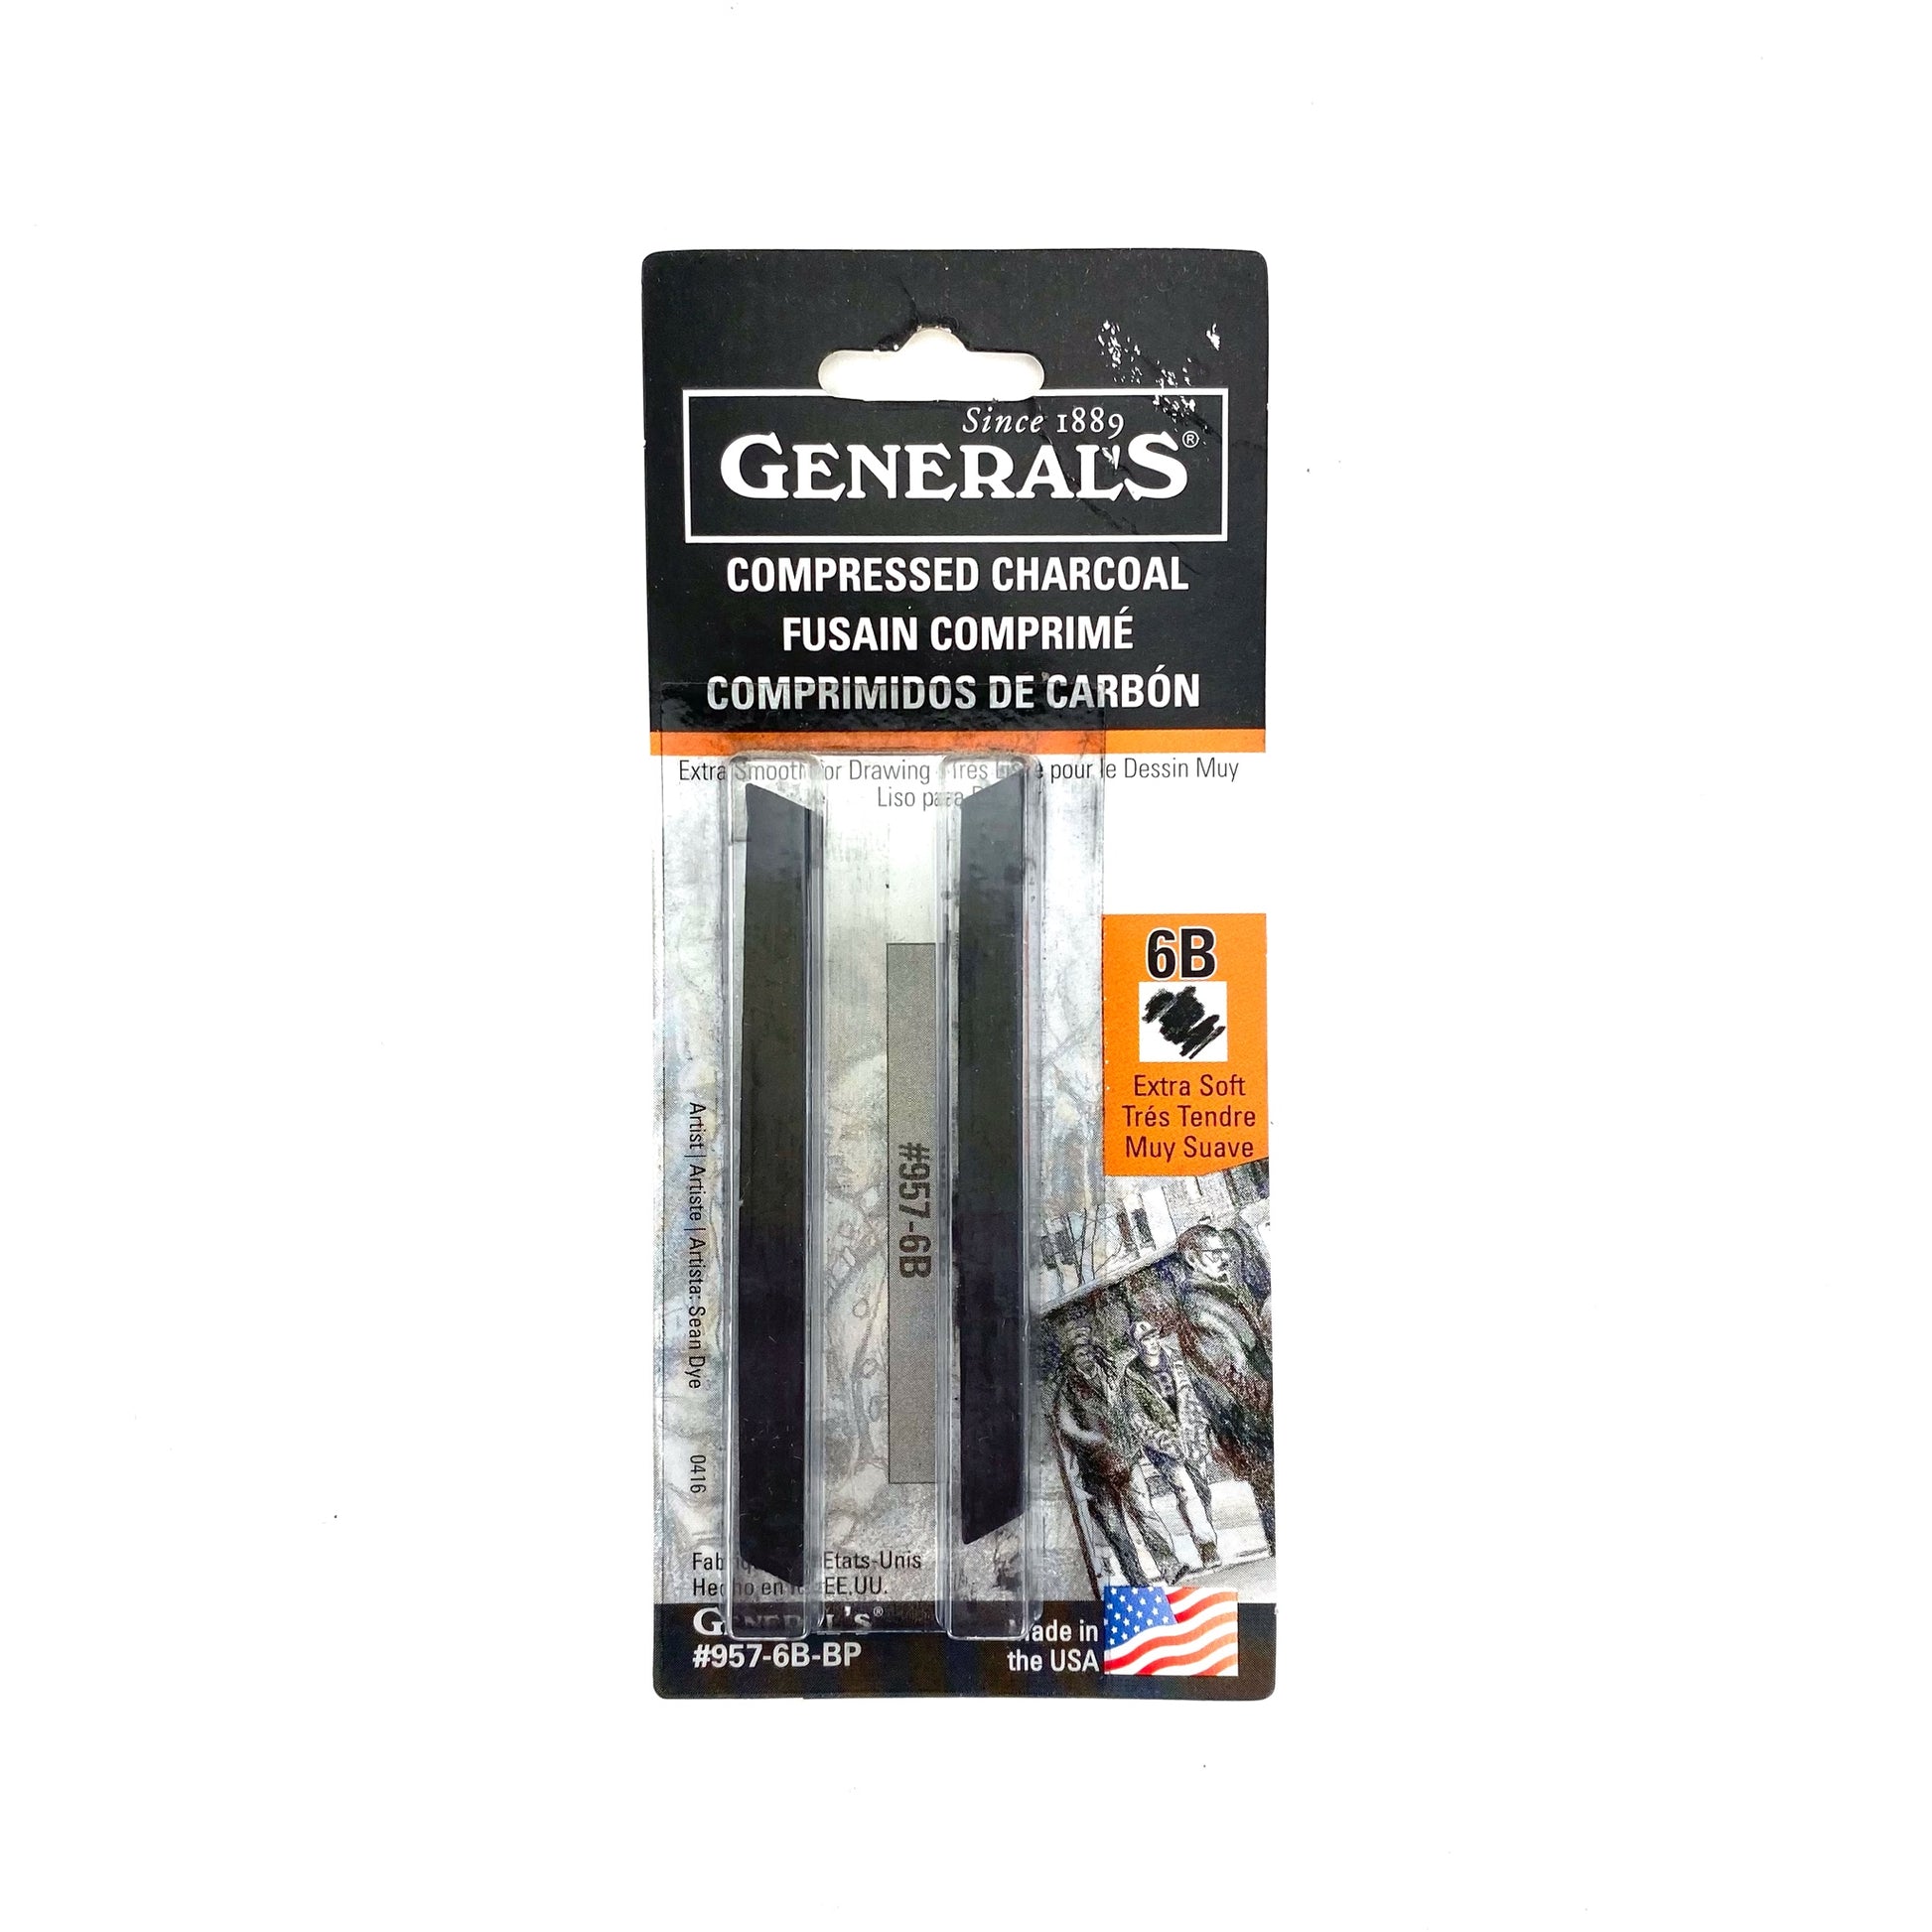 General's Factis Extra Soft White Vinyl Eraser